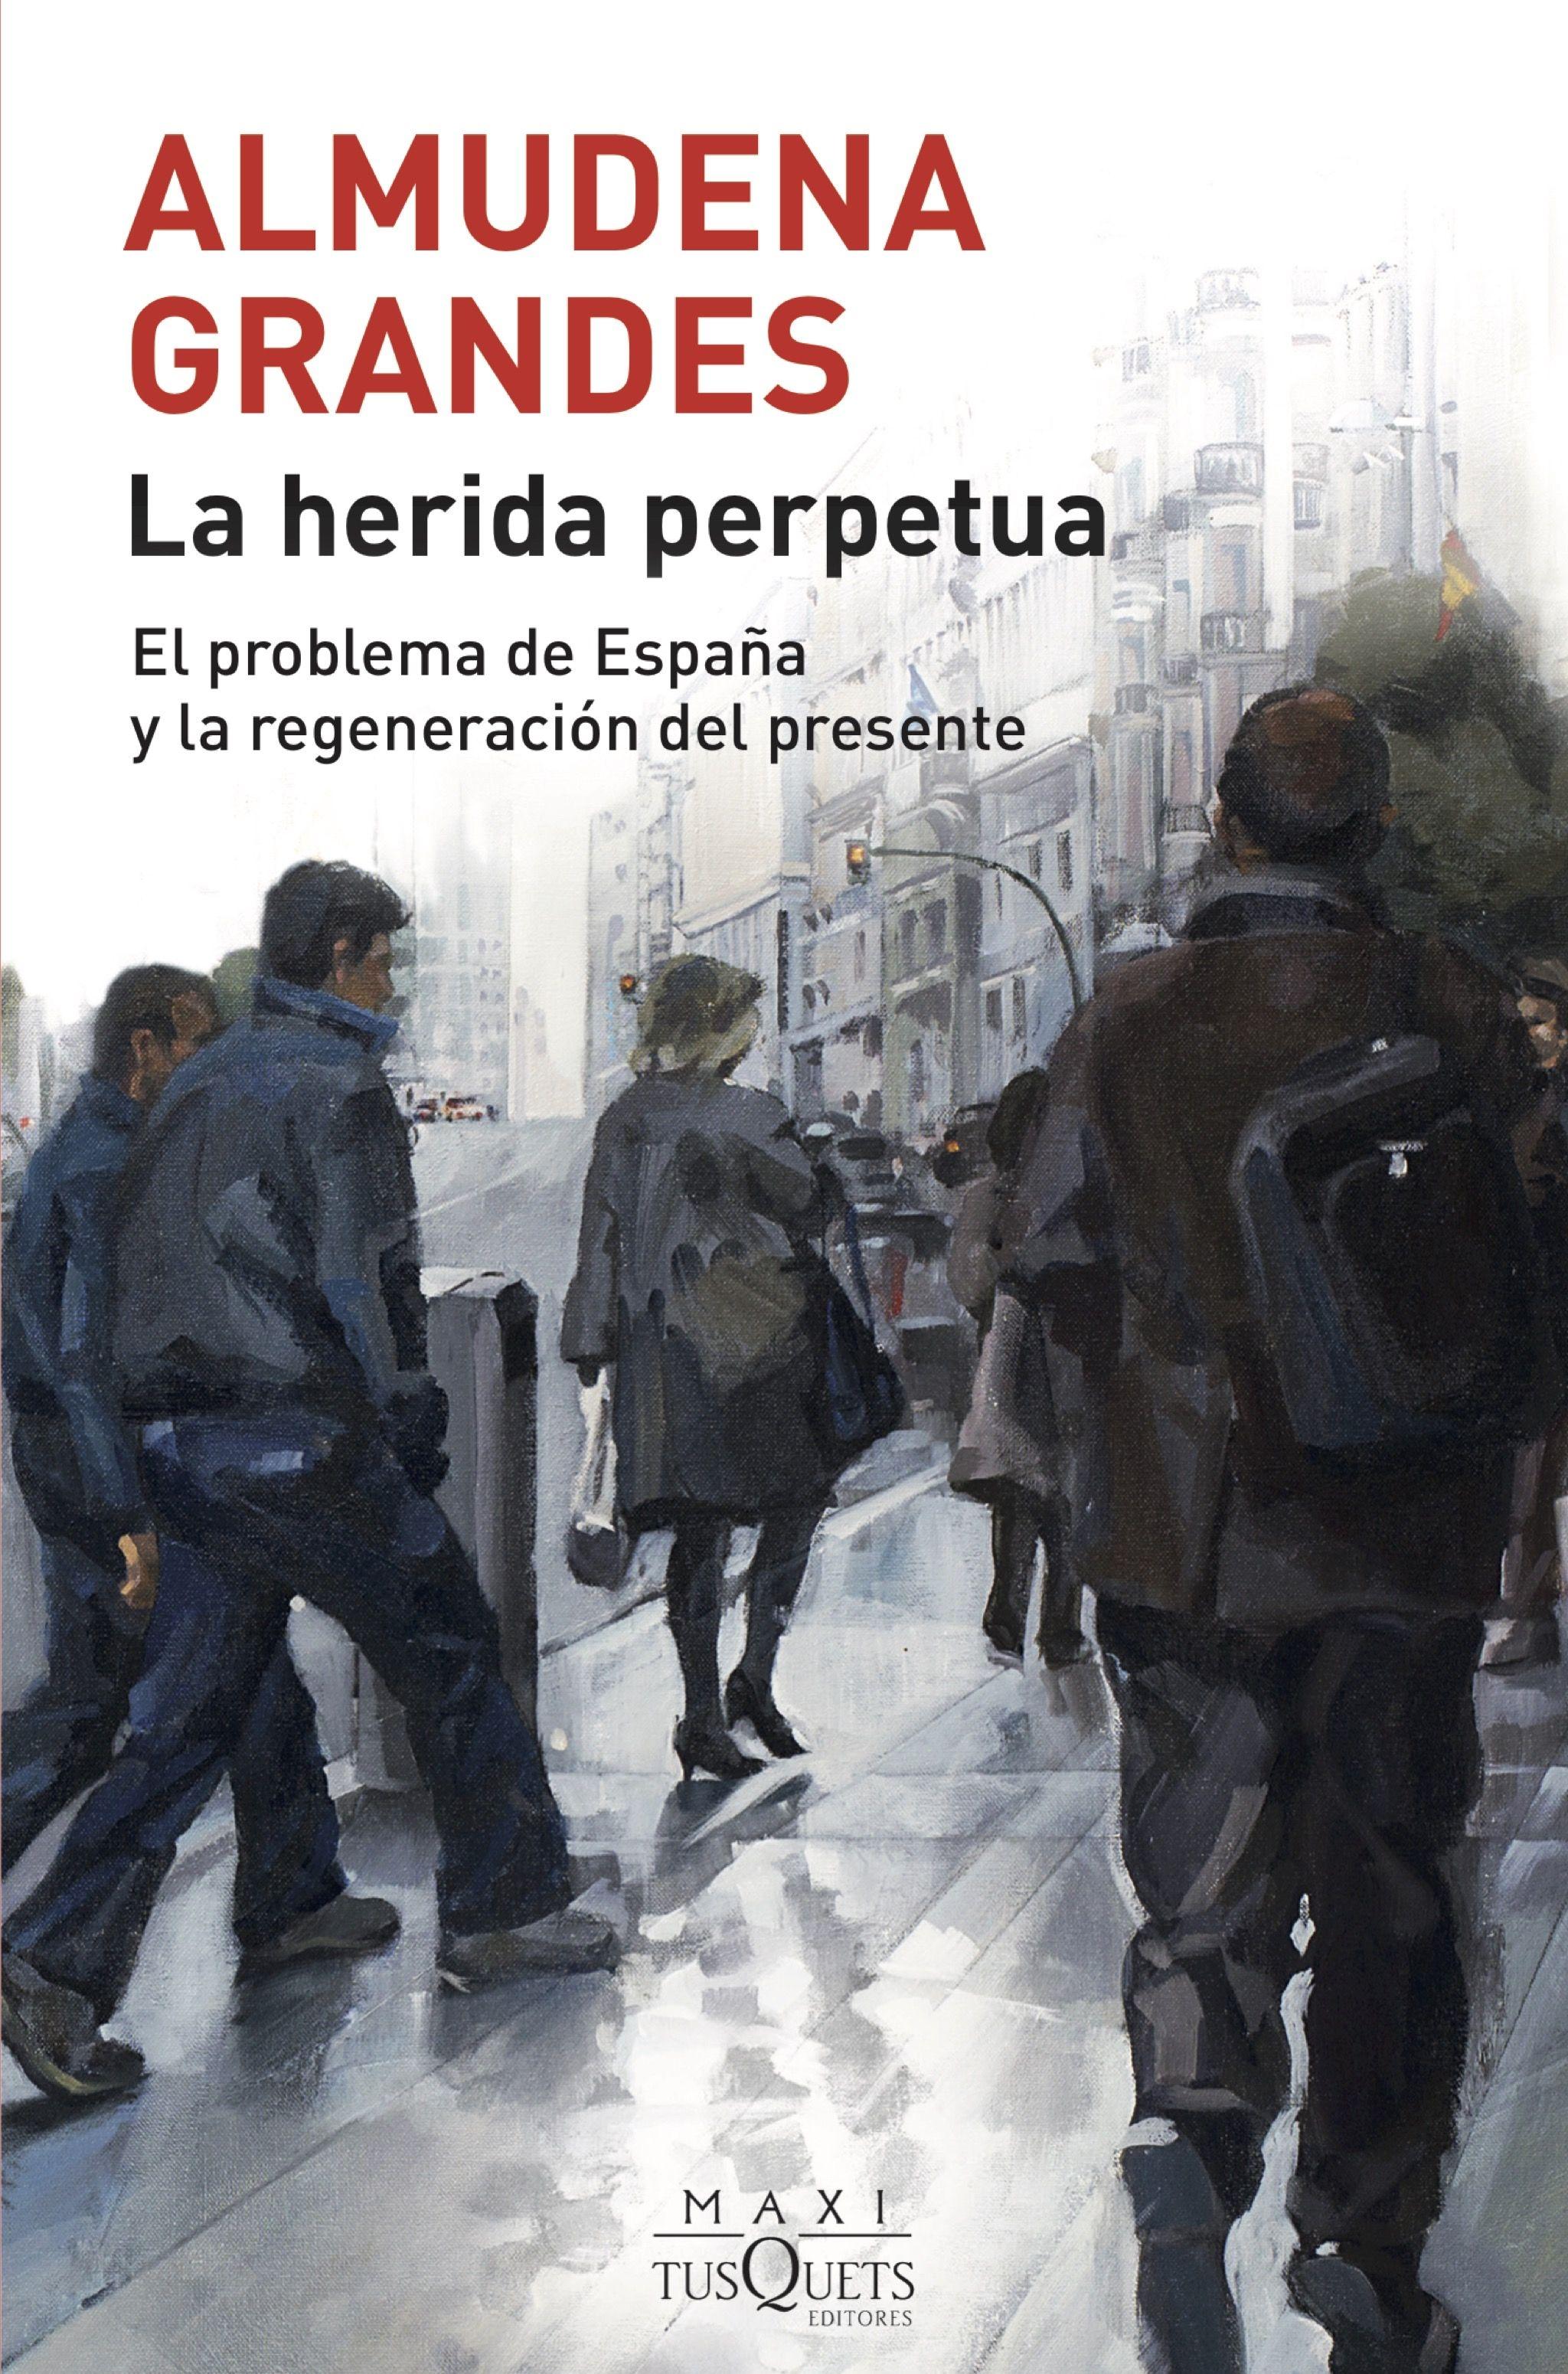 La herida perpetua "El problema de España y la regeneración del presente". 